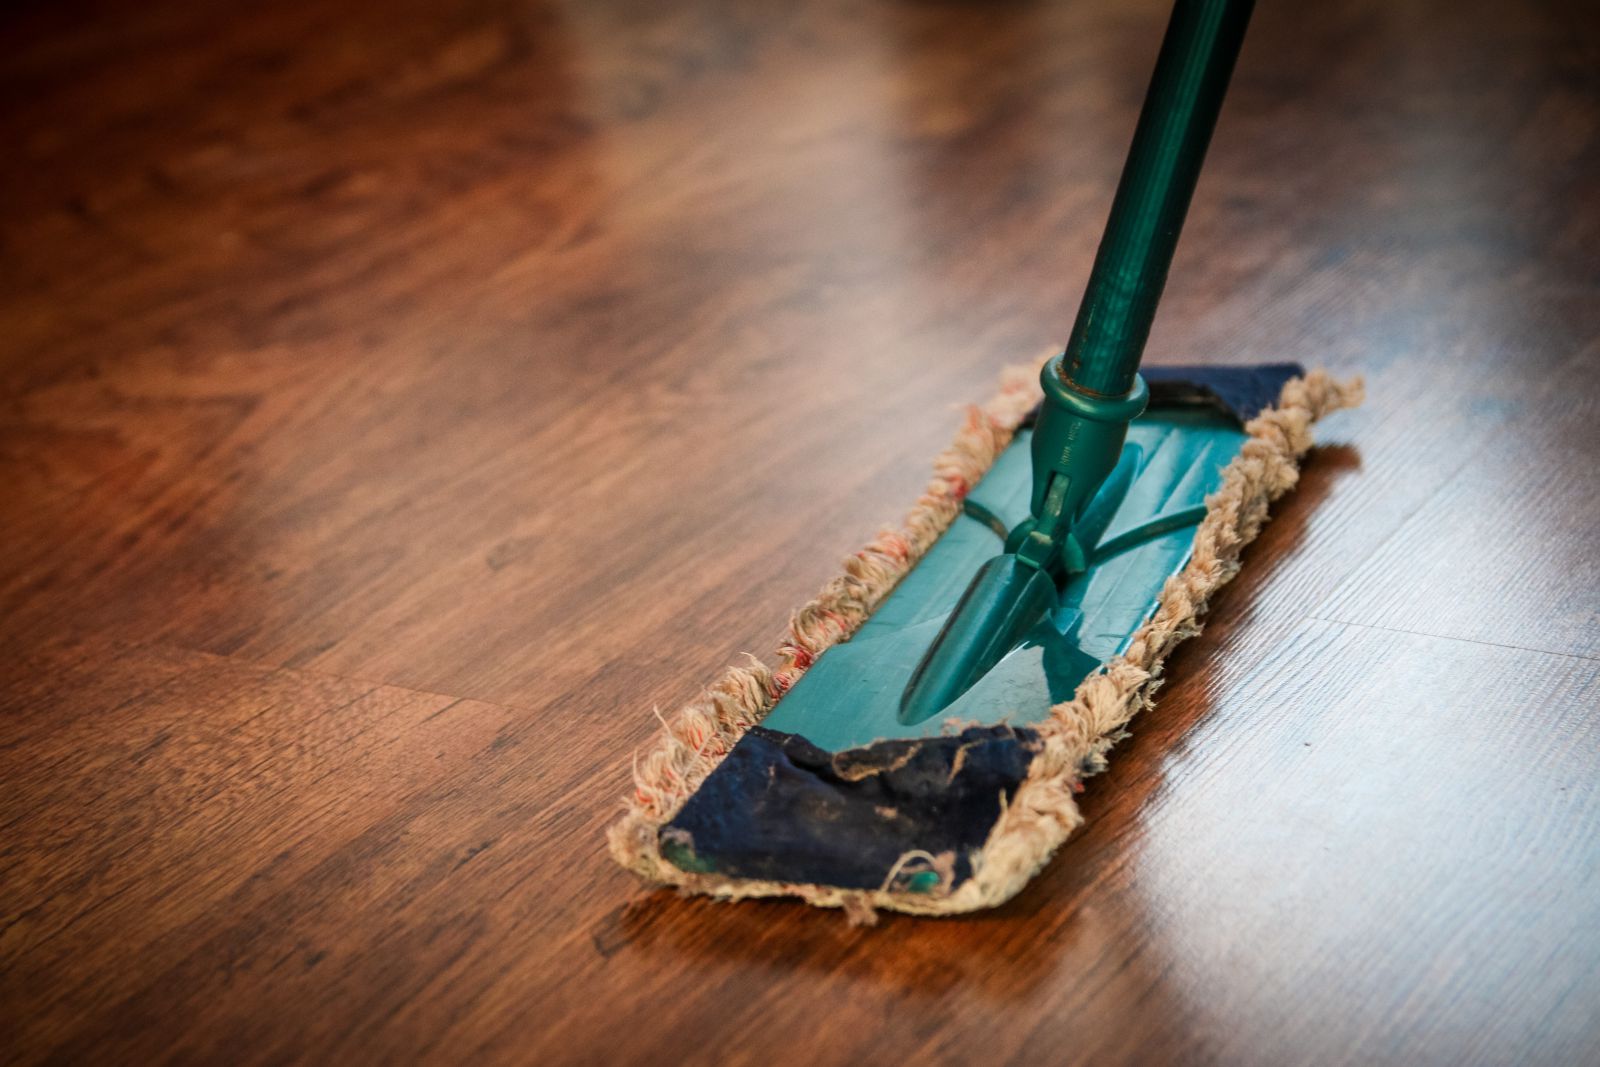 Vệ sinh sàn nhà thường xuyên giúp tăng độ bền sản phẩm và bảo vệ sức khỏe gia đình